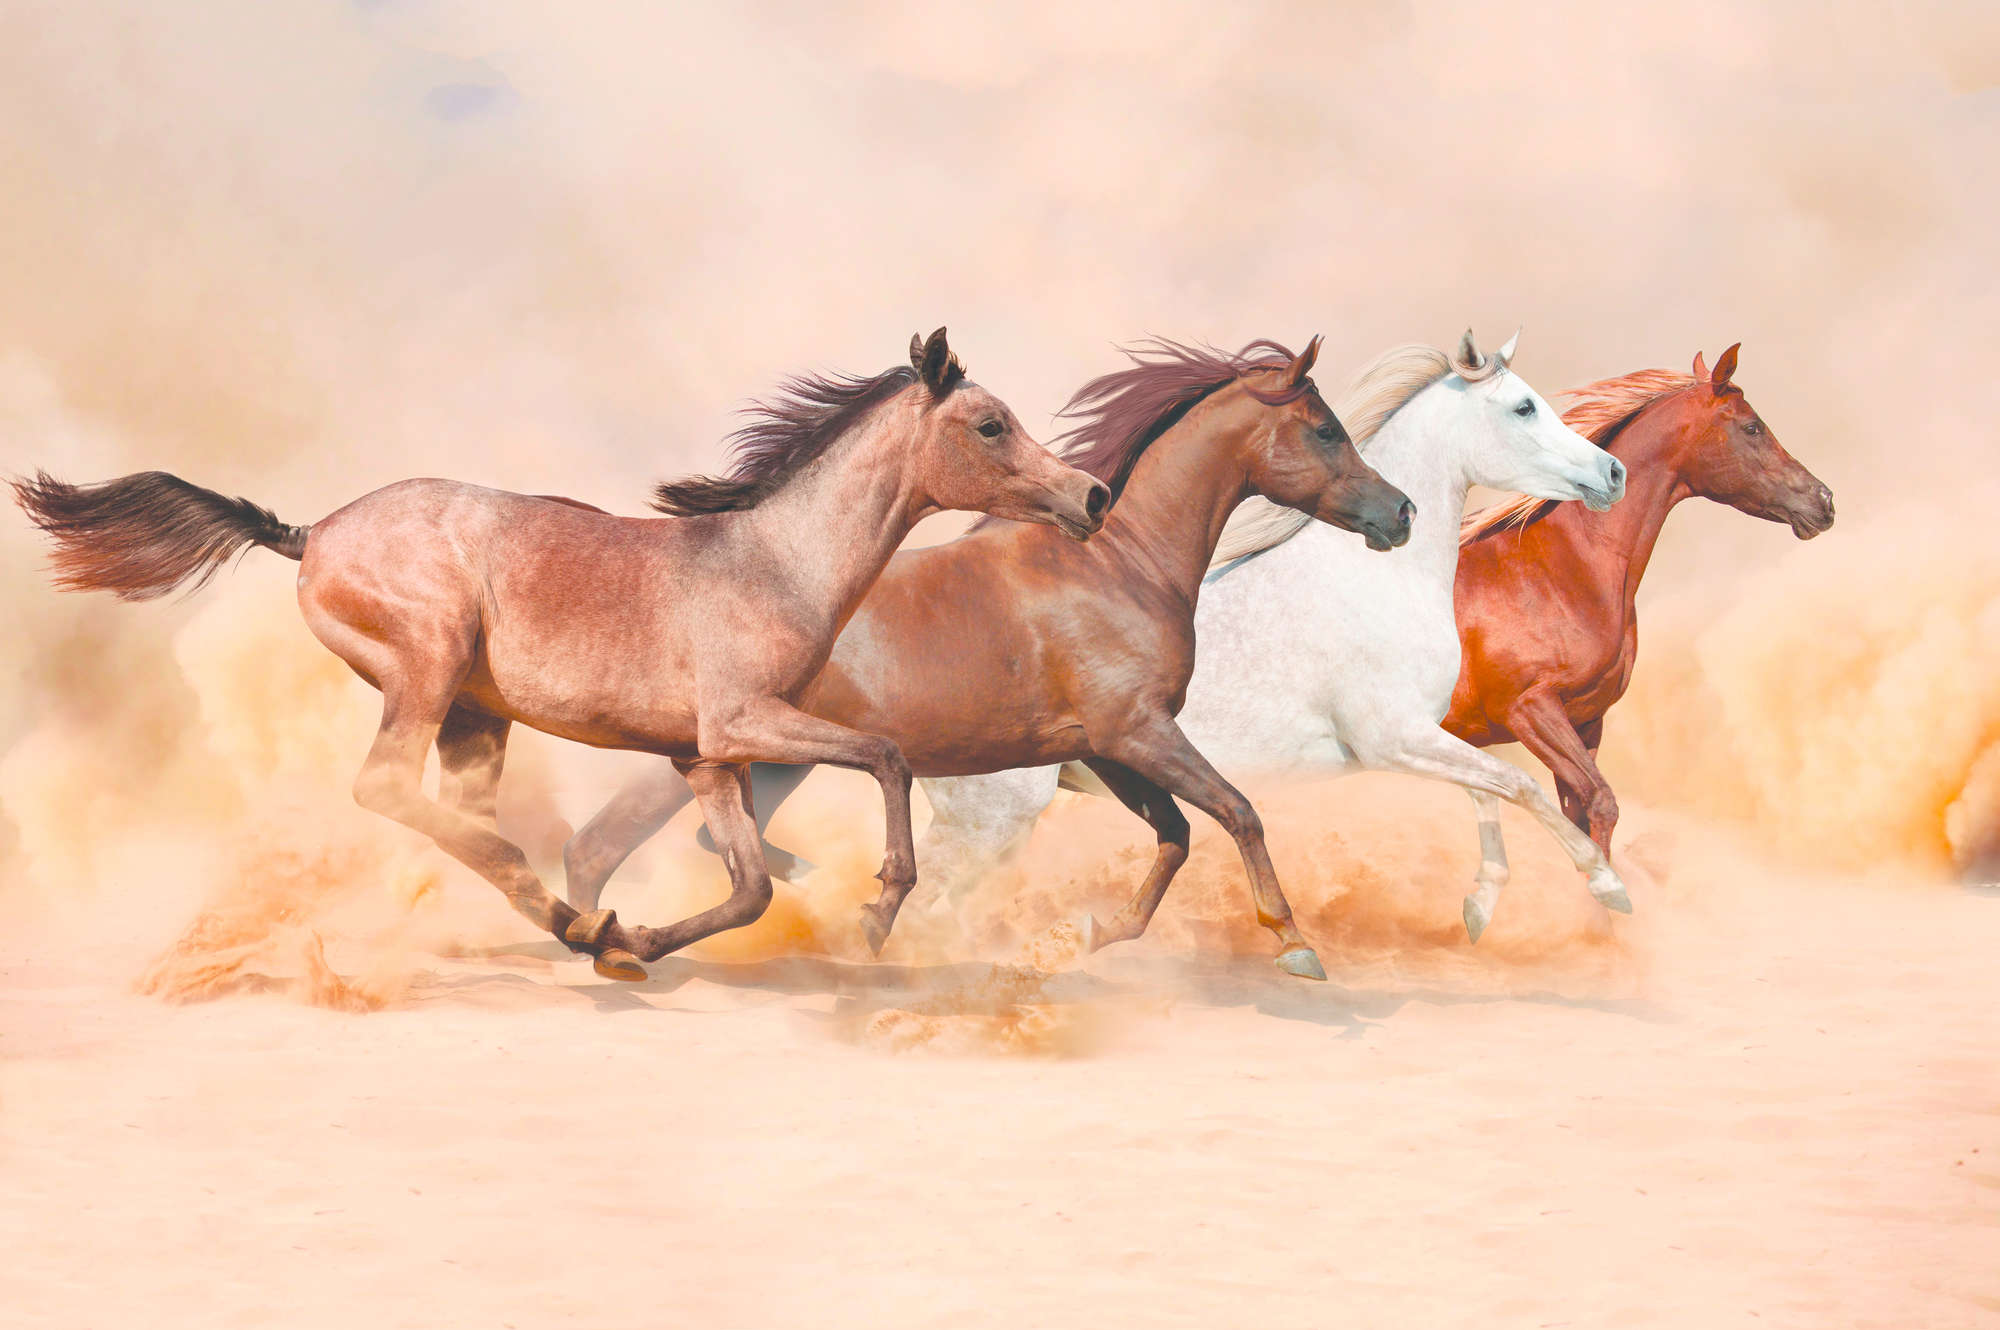             Paardenmuurschildering met galopperende kudde op eersteklas gladde fleece
        